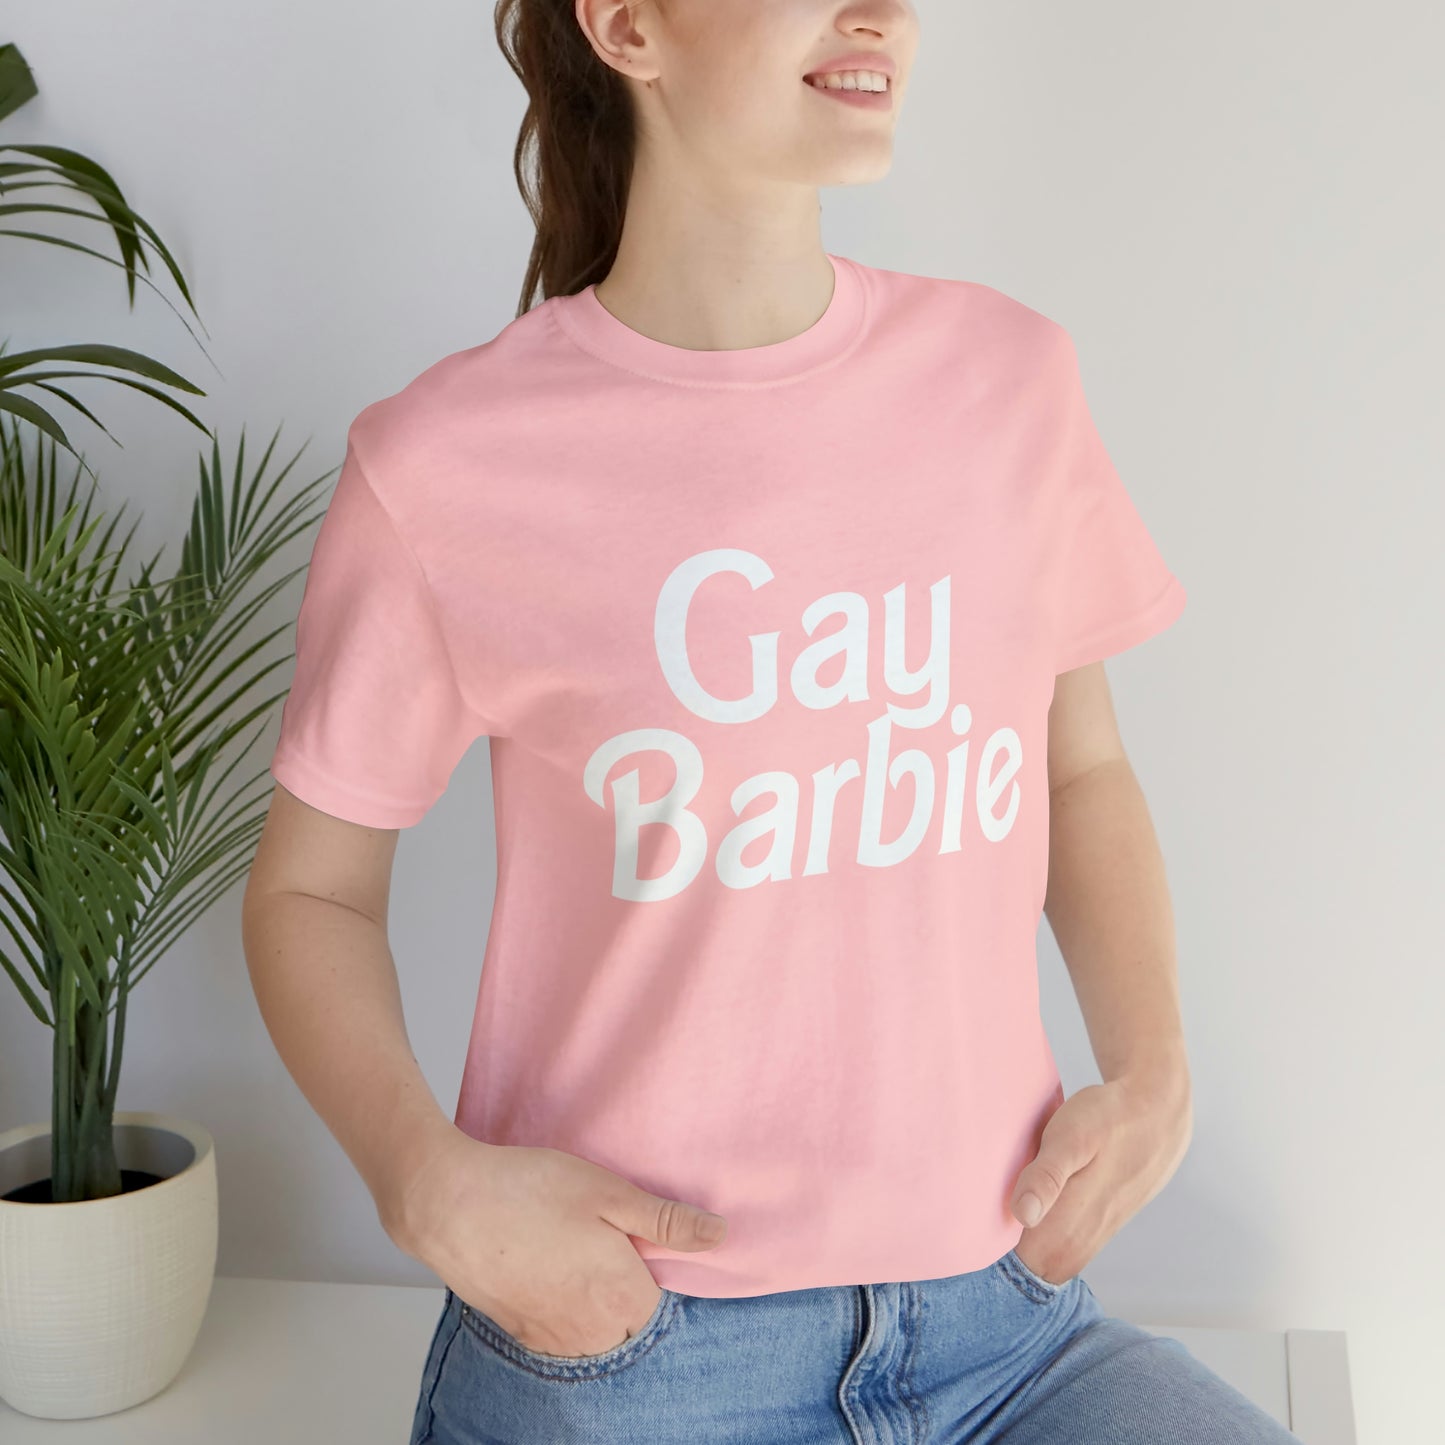 Gay Barbie